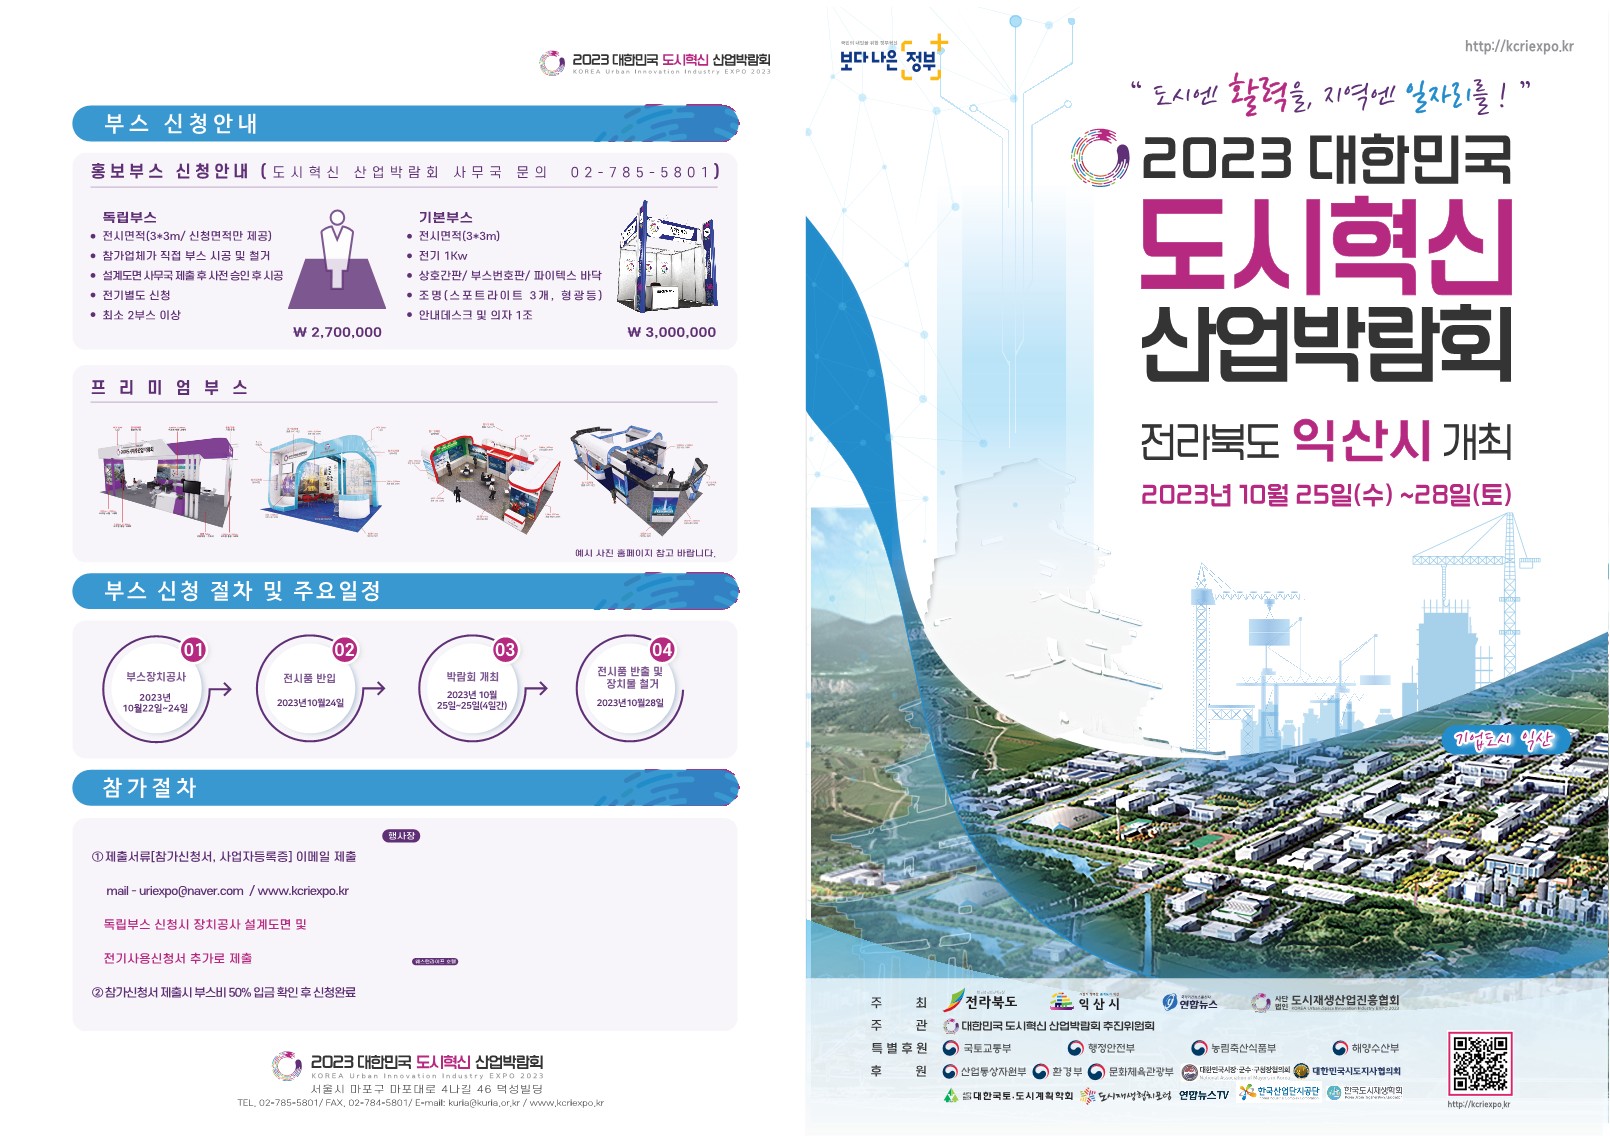 2023 도시혁신 대한민국 산업 박람회 이미지(2)